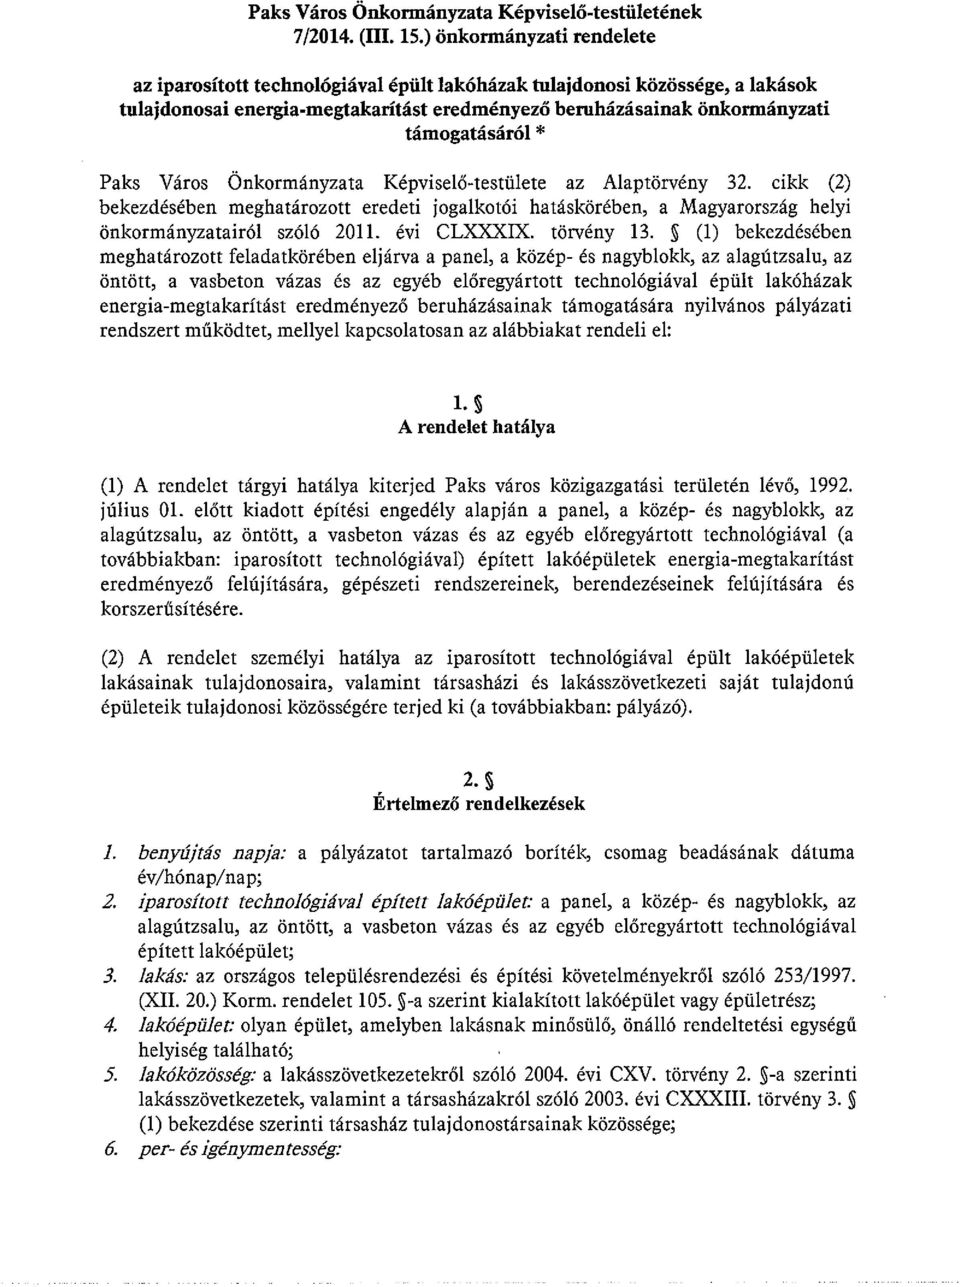 Paks Város Önkormányzata Képviselő-testülete az Alaptörvény 32. cikk (2) bekezdésében meghatározott eredeti jogalkotói hatáskörében, a Magyarország helyi önkormányzatairól szóló 2011. évi CLXXXIX.